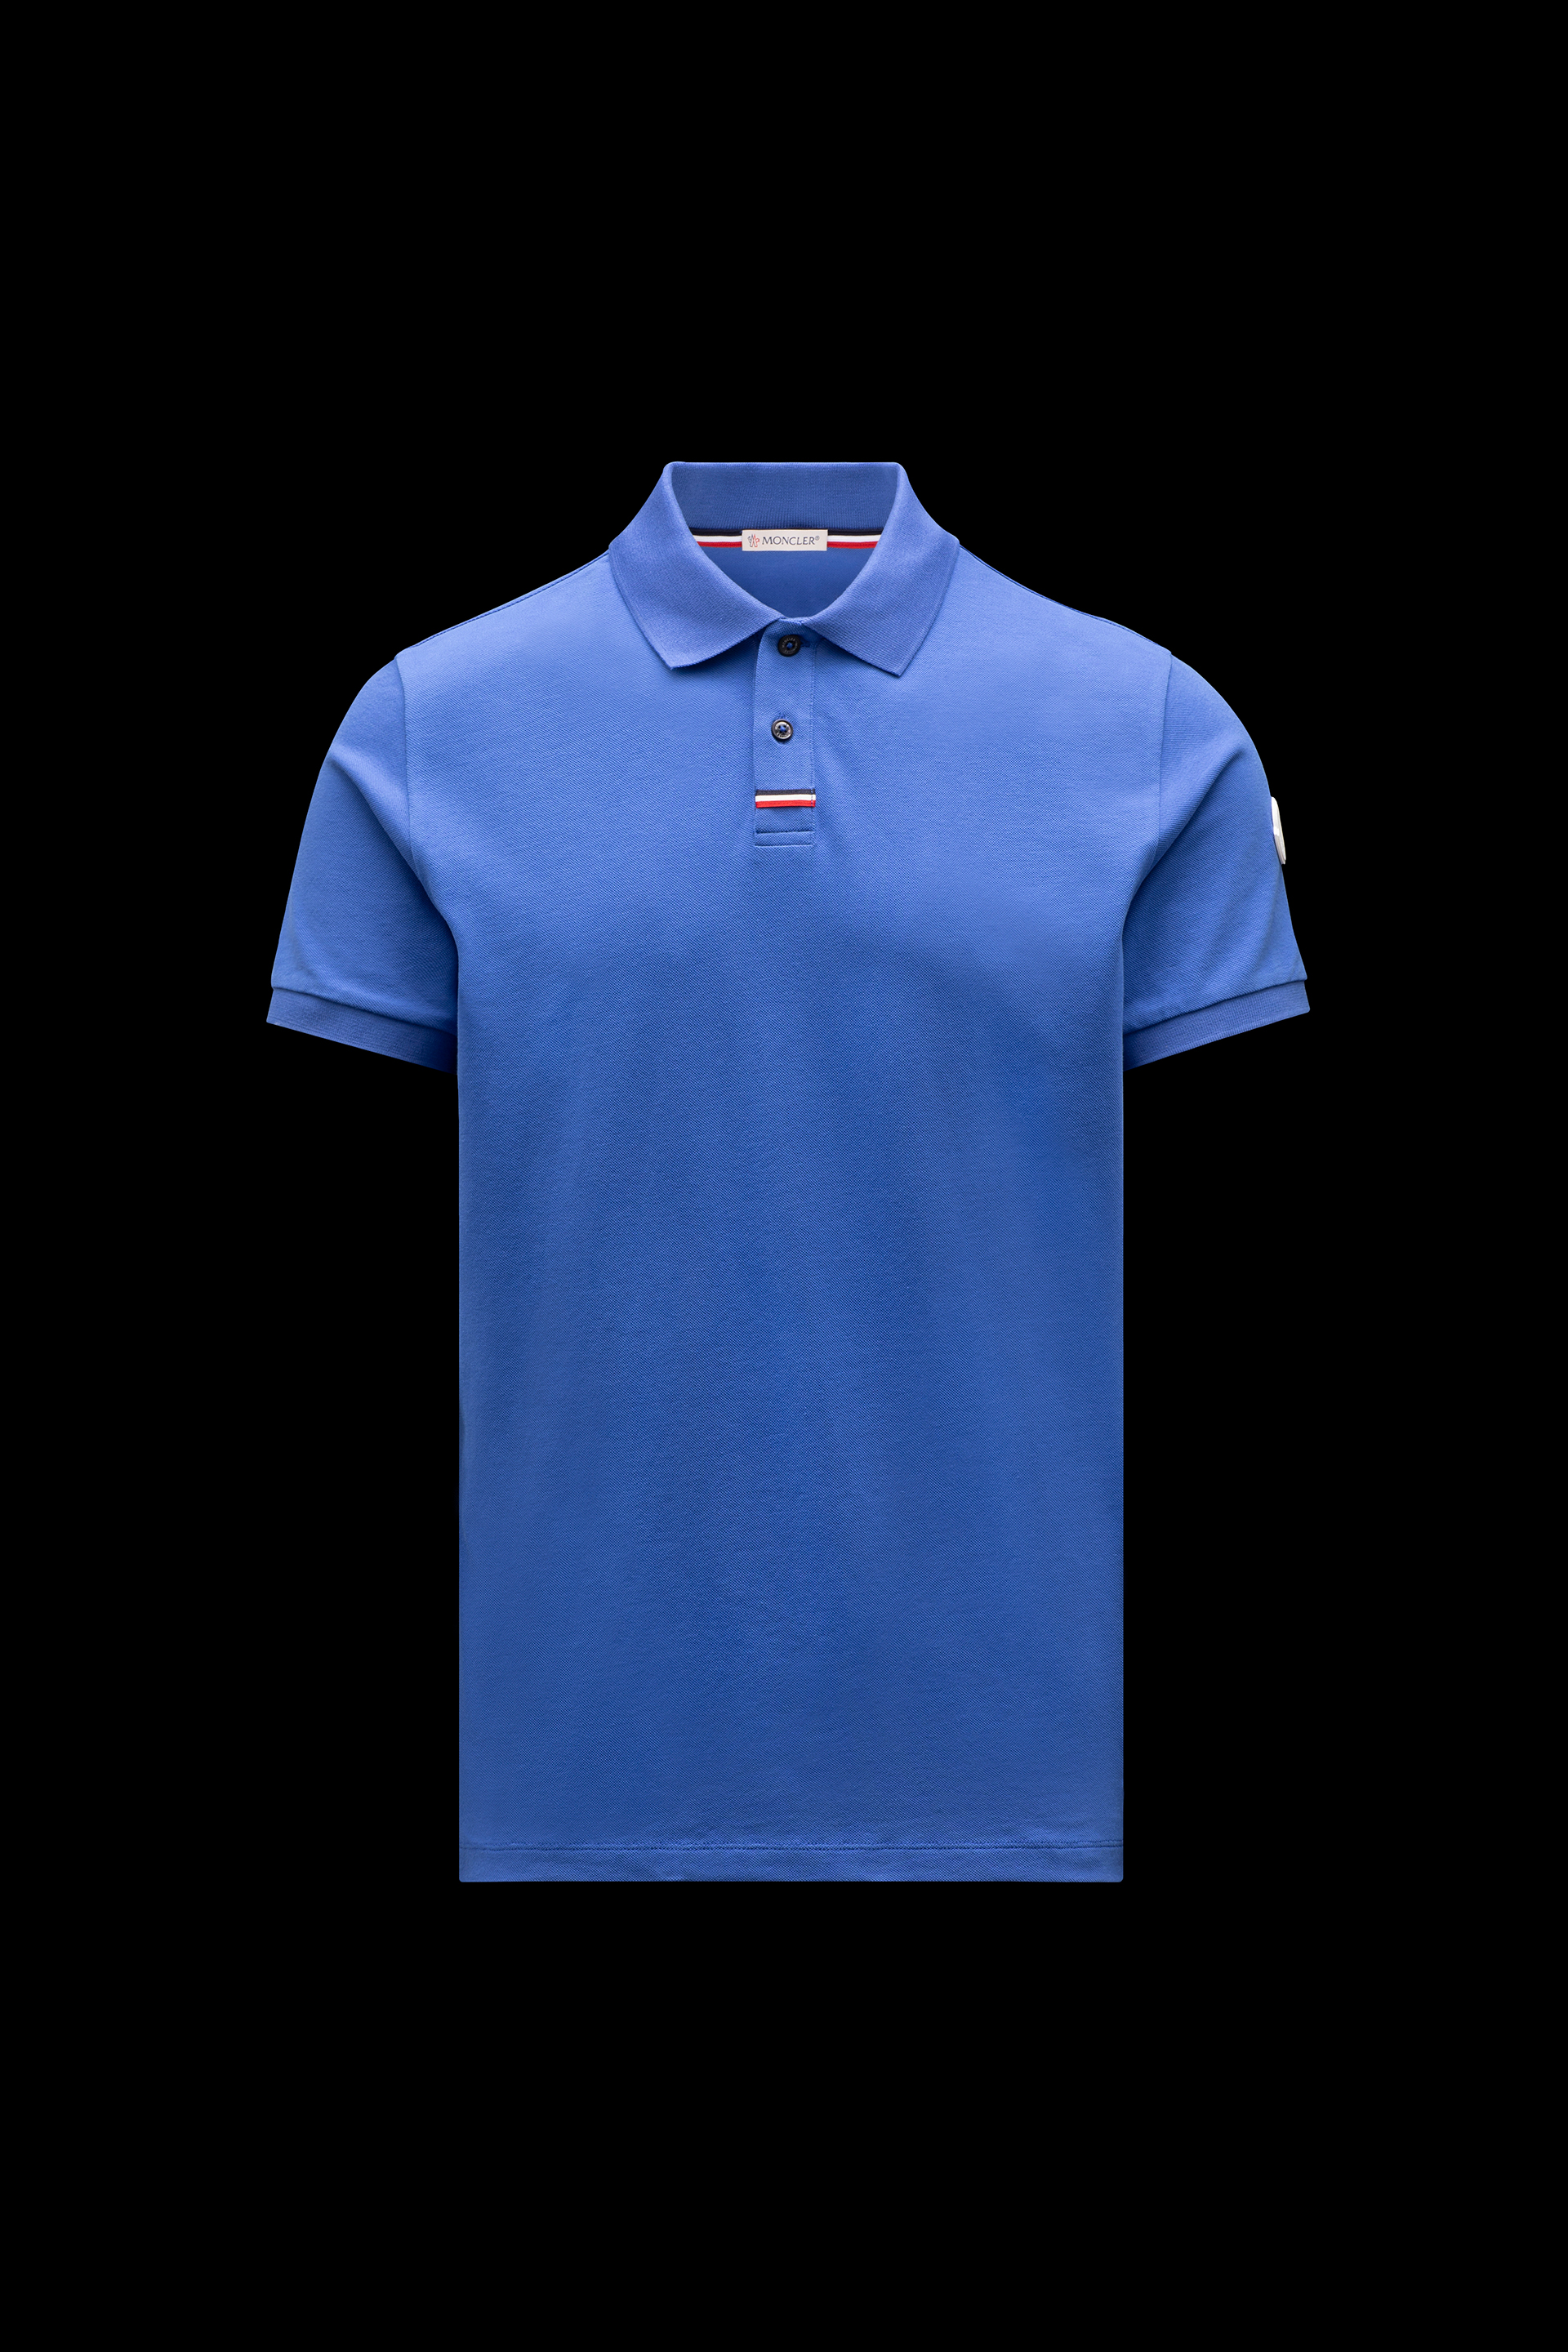 男士商务休闲短袖polo衫 墨蓝色 – polo衫和t恤 – 男装 